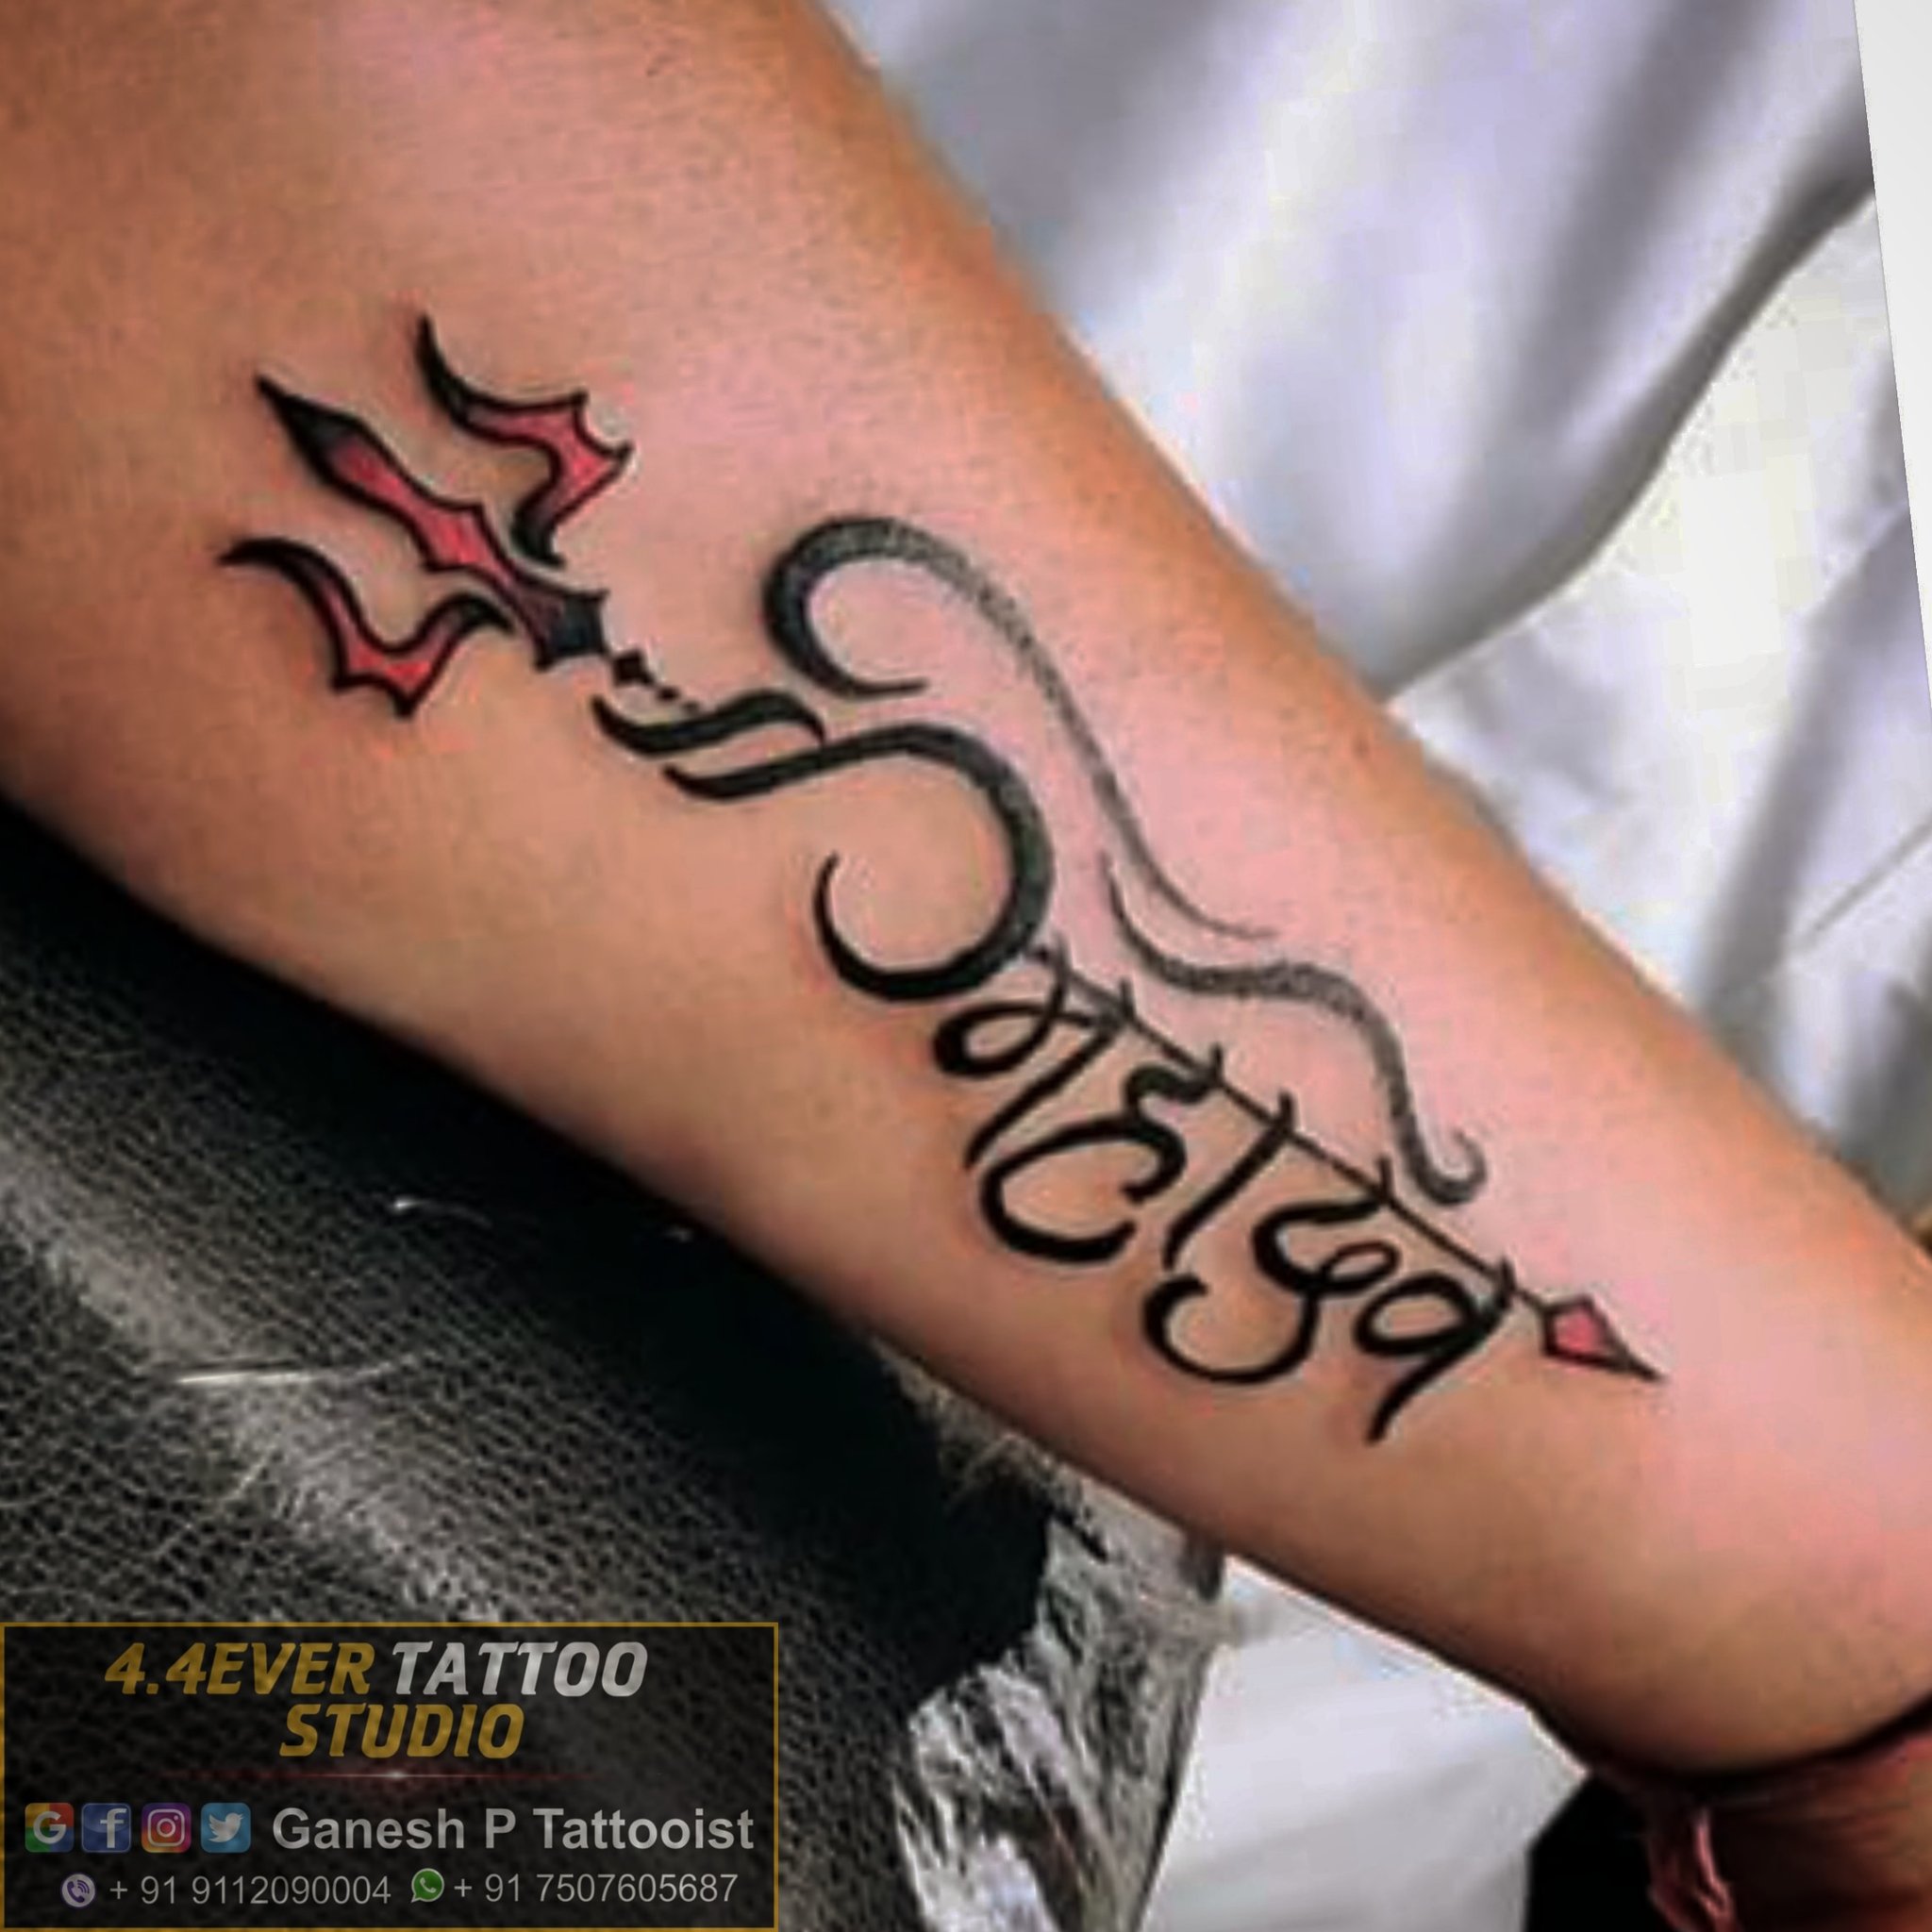 44EVER TATTOO STUDIO  Body piercing on Instagram  कषतरकलवतस   महरज  kshatriykulavntas Tattoo design by ganeshptattooist Nanded  kshatriykulavantastattoo